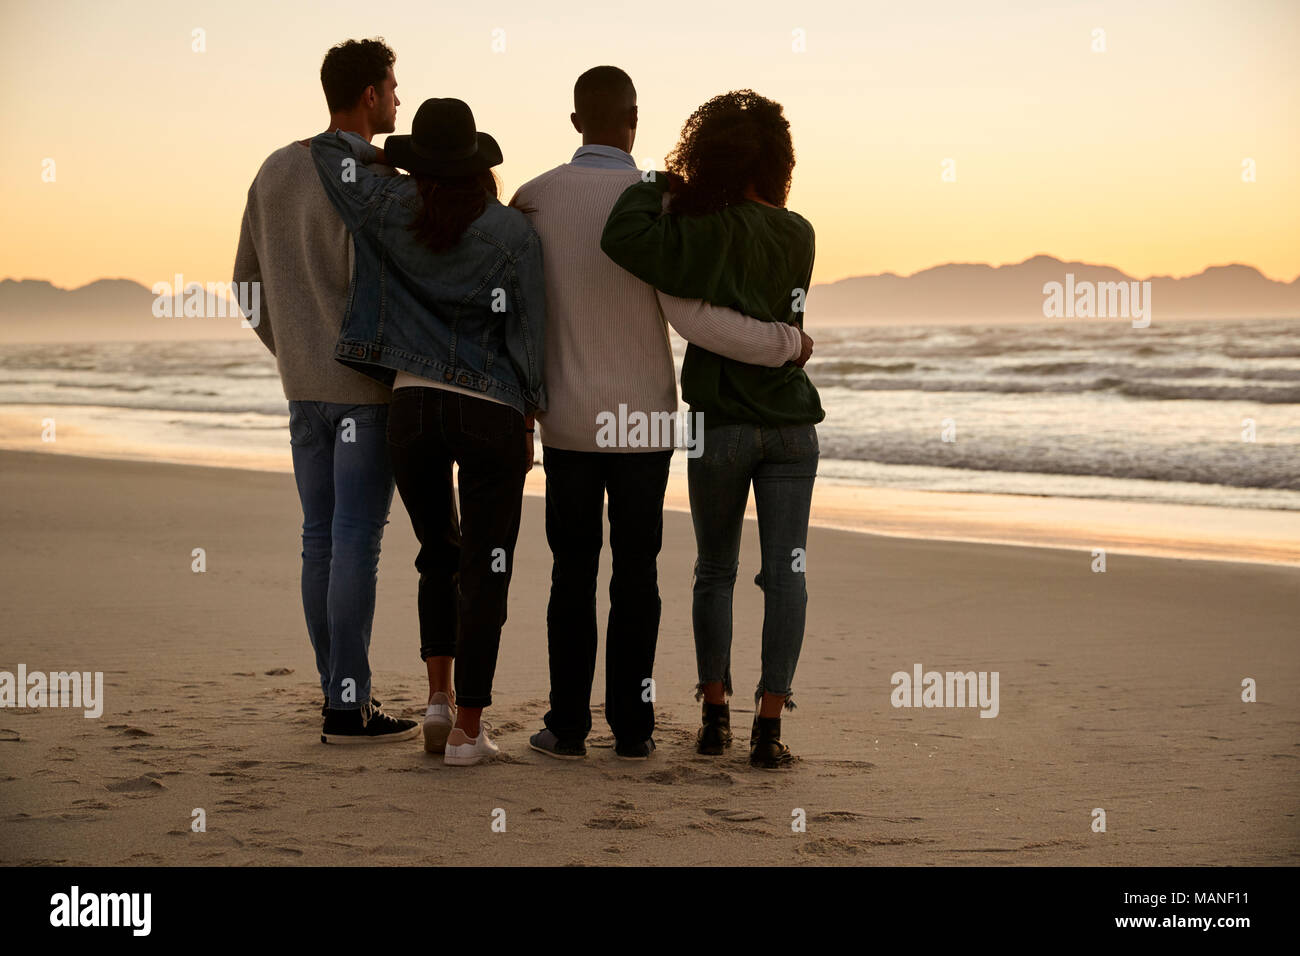 Groupe d'amis sur la plage en regardant le lever du soleil Ensemble d'hiver Banque D'Images